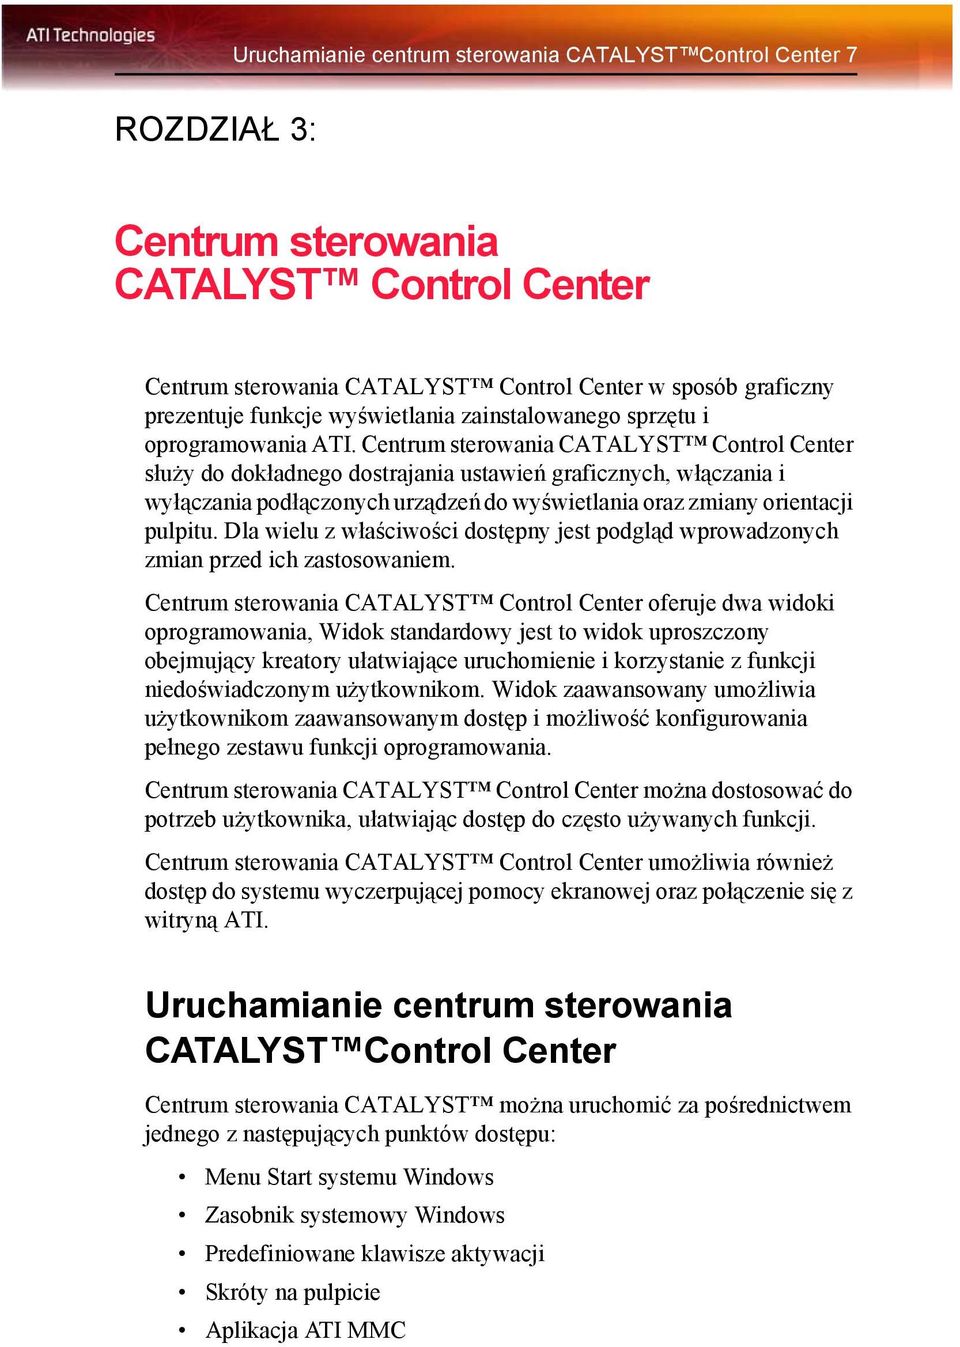 Centrum sterowania CATALYST Control Center służy do dokładnego dostrajania ustawień graficznych, włączania i wyłączania podłączonych urządzeń do wyświetlania oraz zmiany orientacji pulpitu.